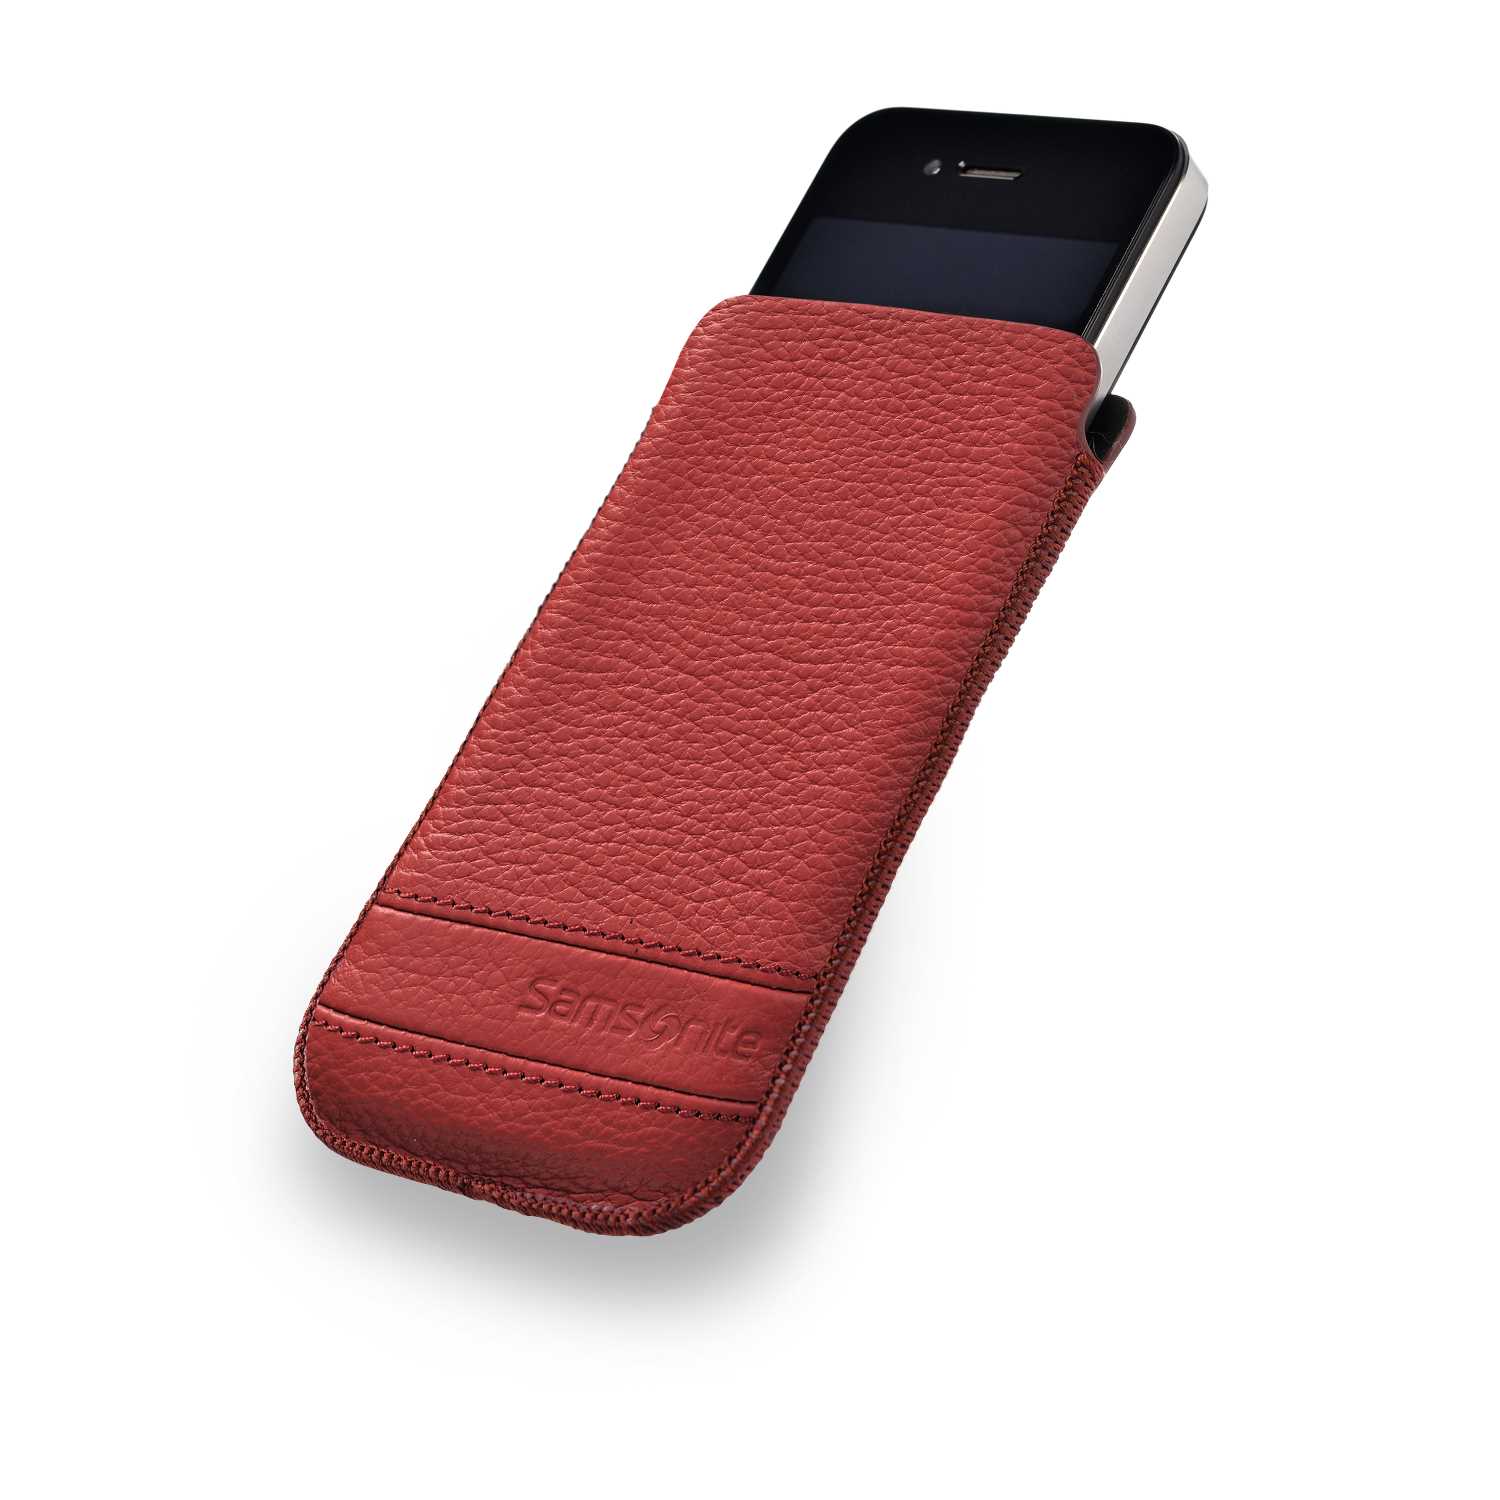 SAMSONITE Θήκη κινητού CLASSIC LEATHER iPHONE 5 MAGIC κόκκινη